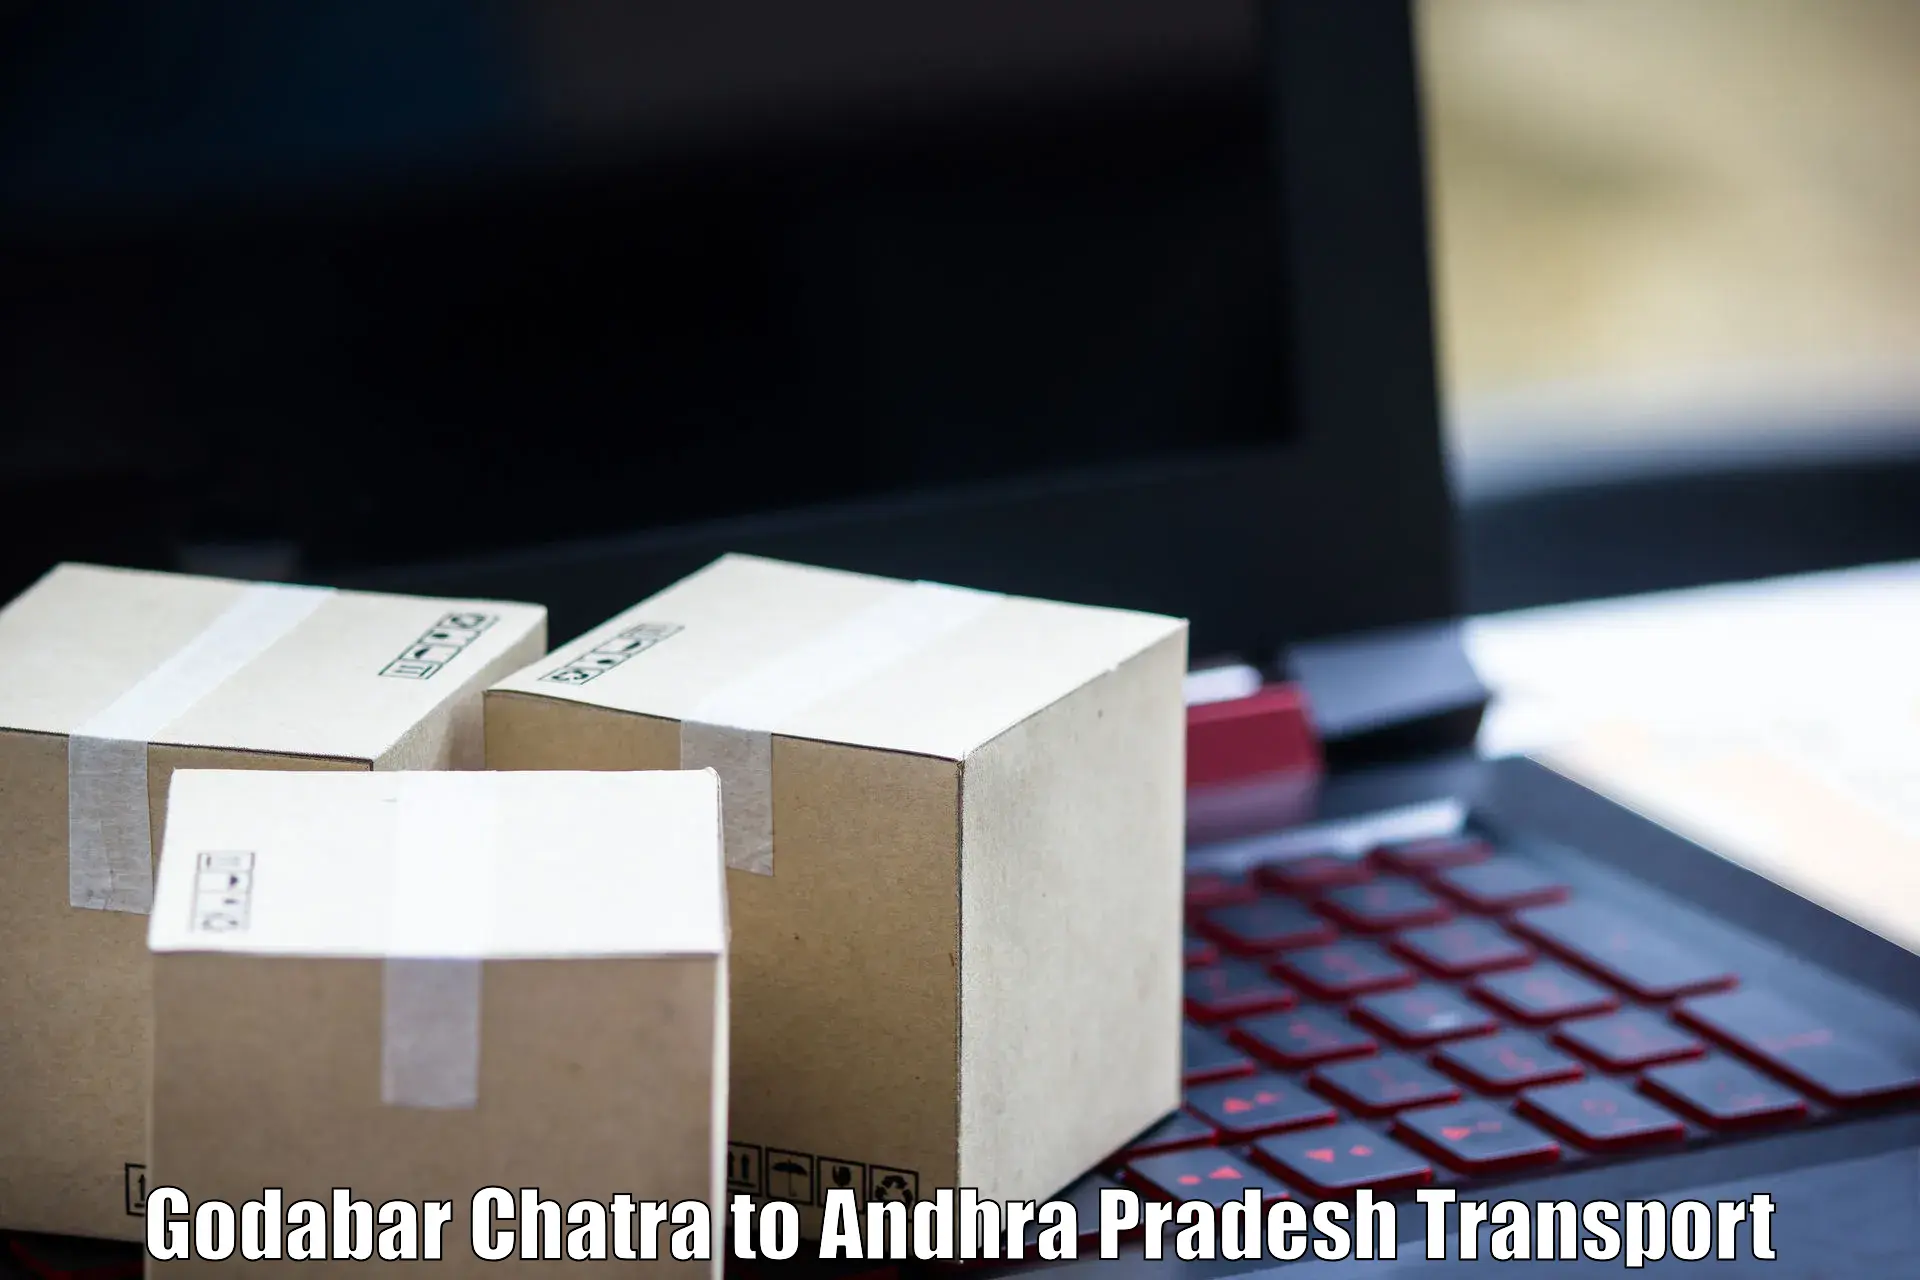 Intercity goods transport Godabar Chatra to Rajahmundry